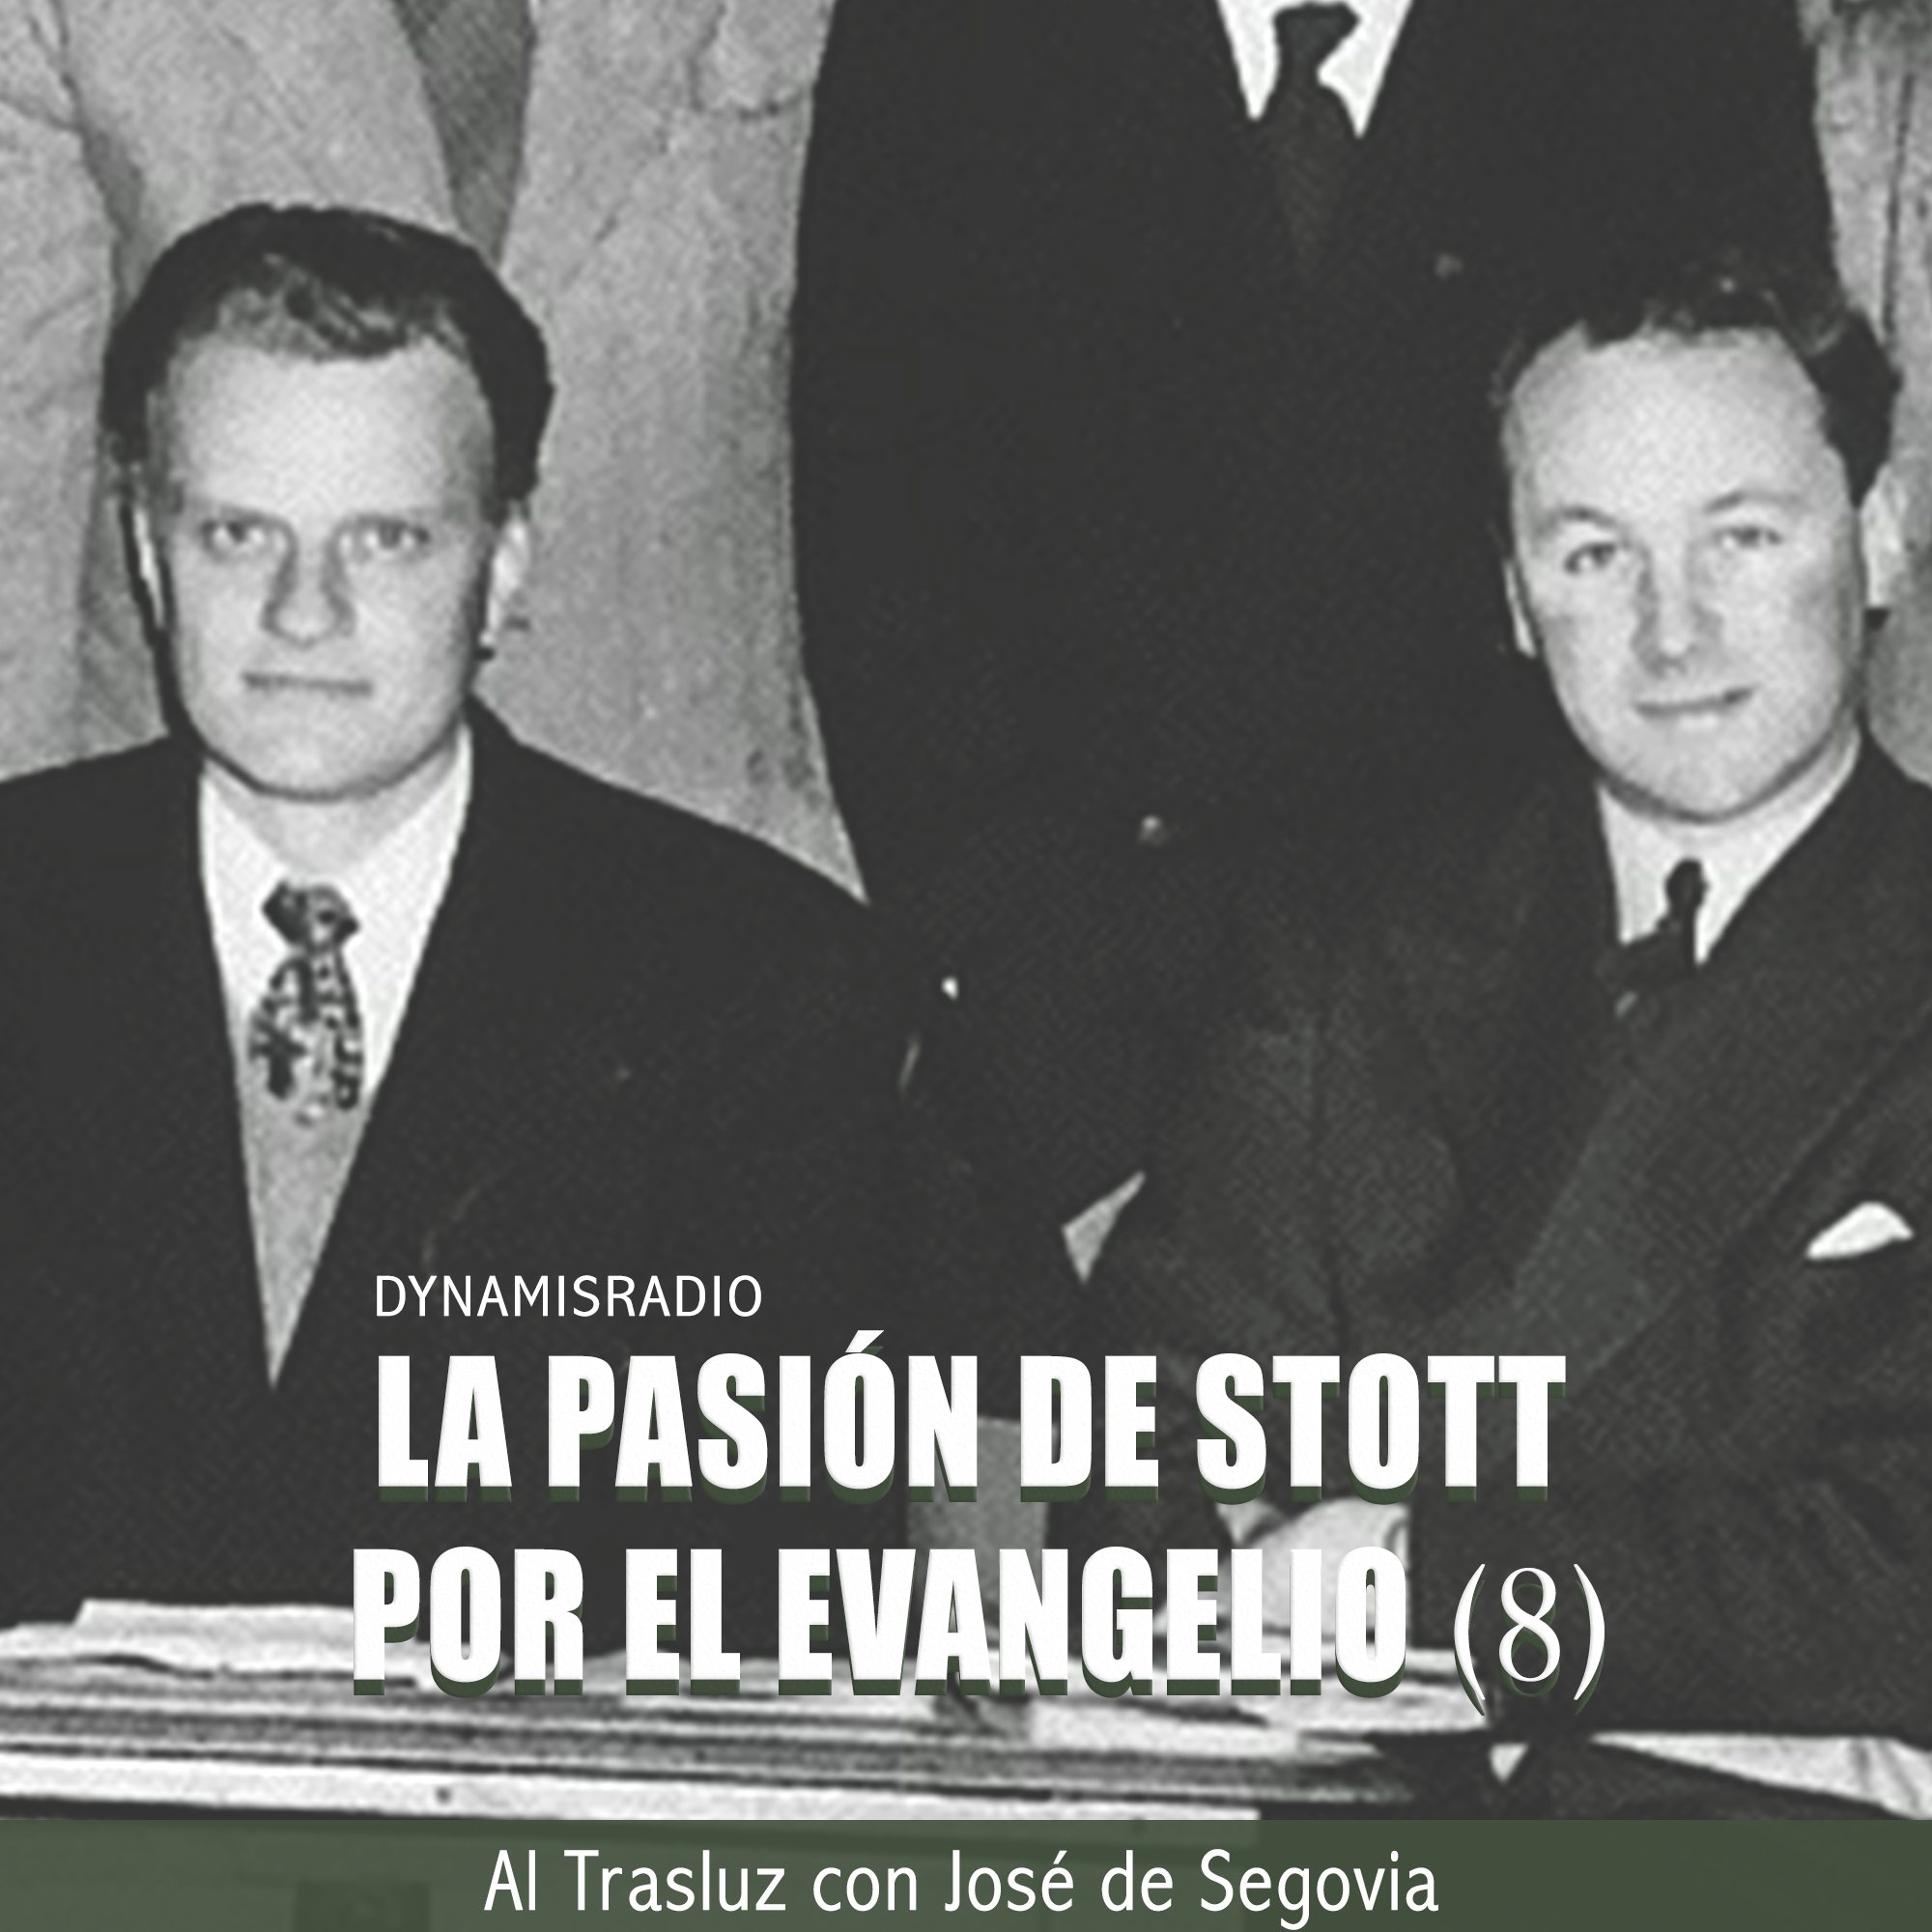 La Pasión de Stott por el Evangelio (8) – Biografía John Stott (José de Segovia)